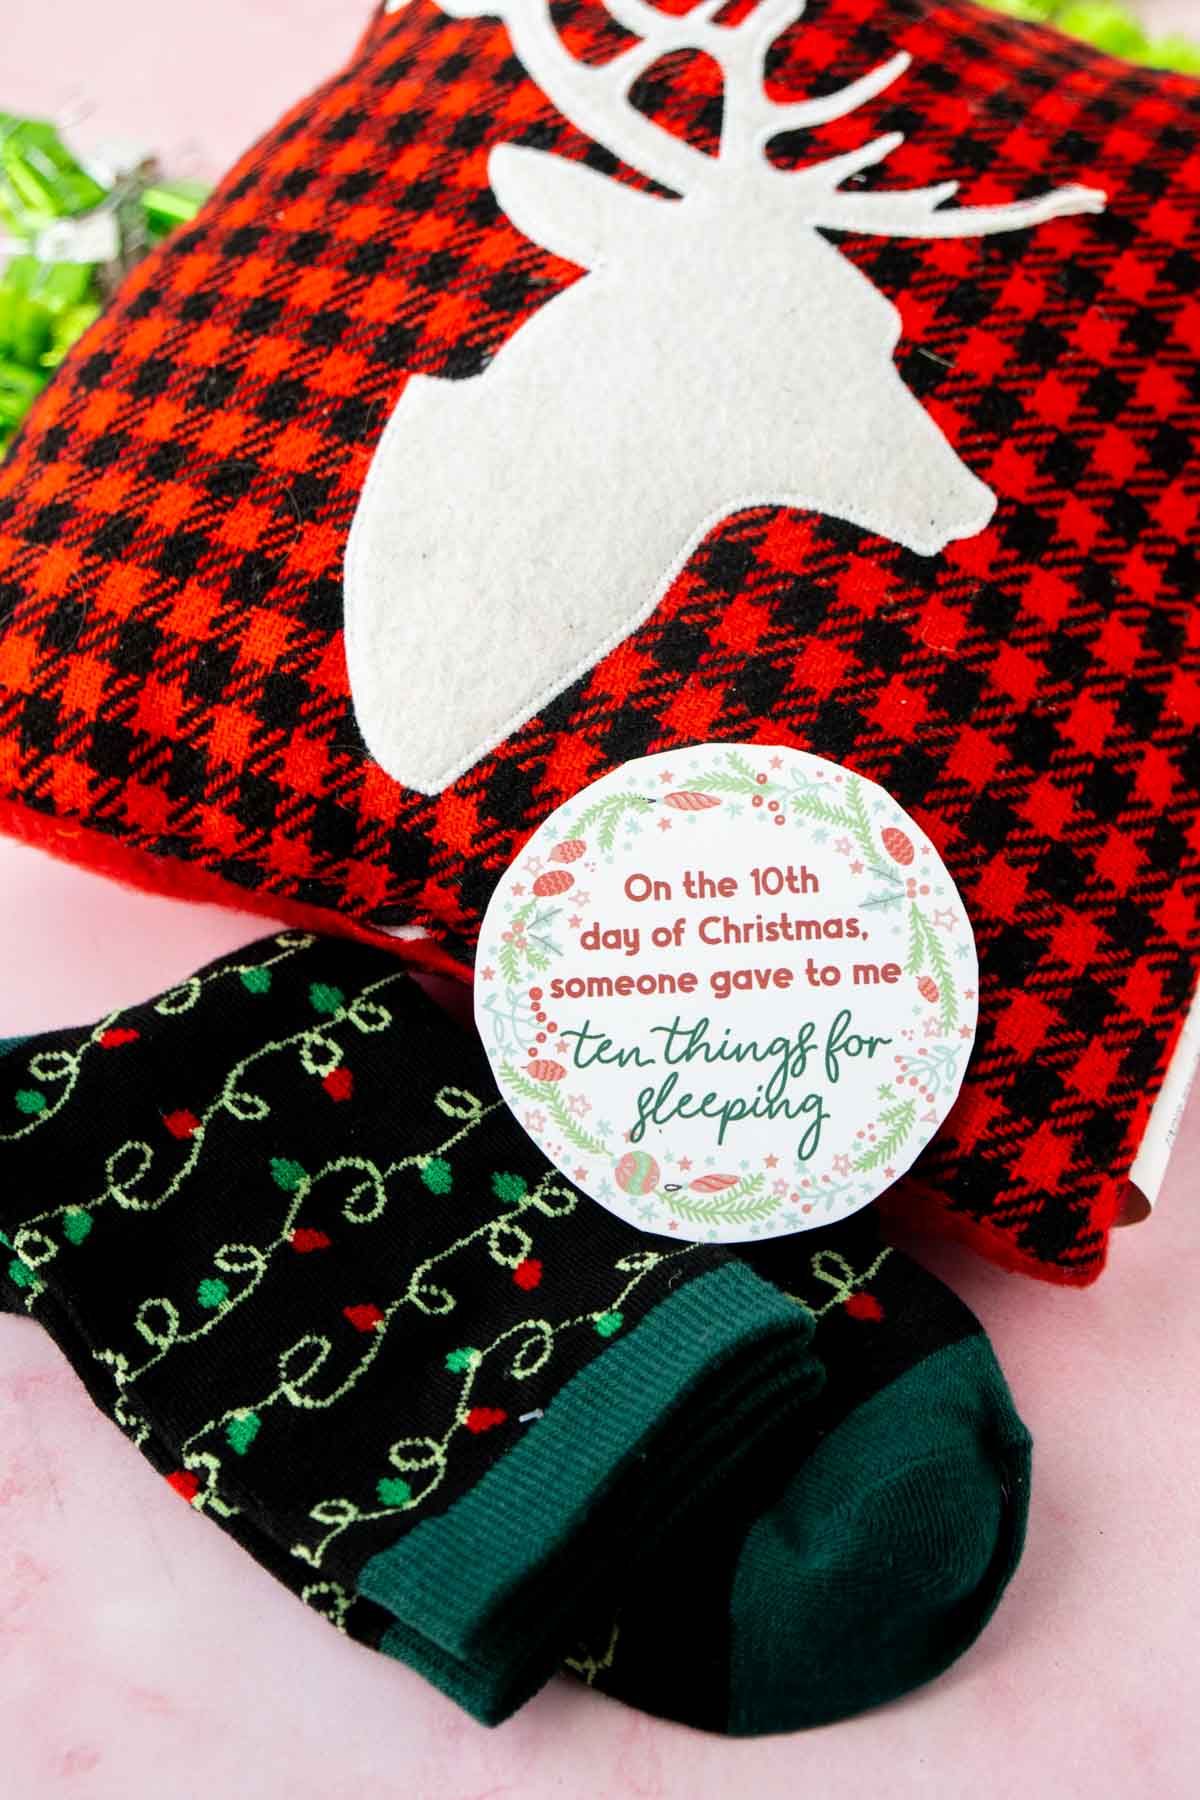 12 días de etiqueta navideña encima de una almohada y calcetines